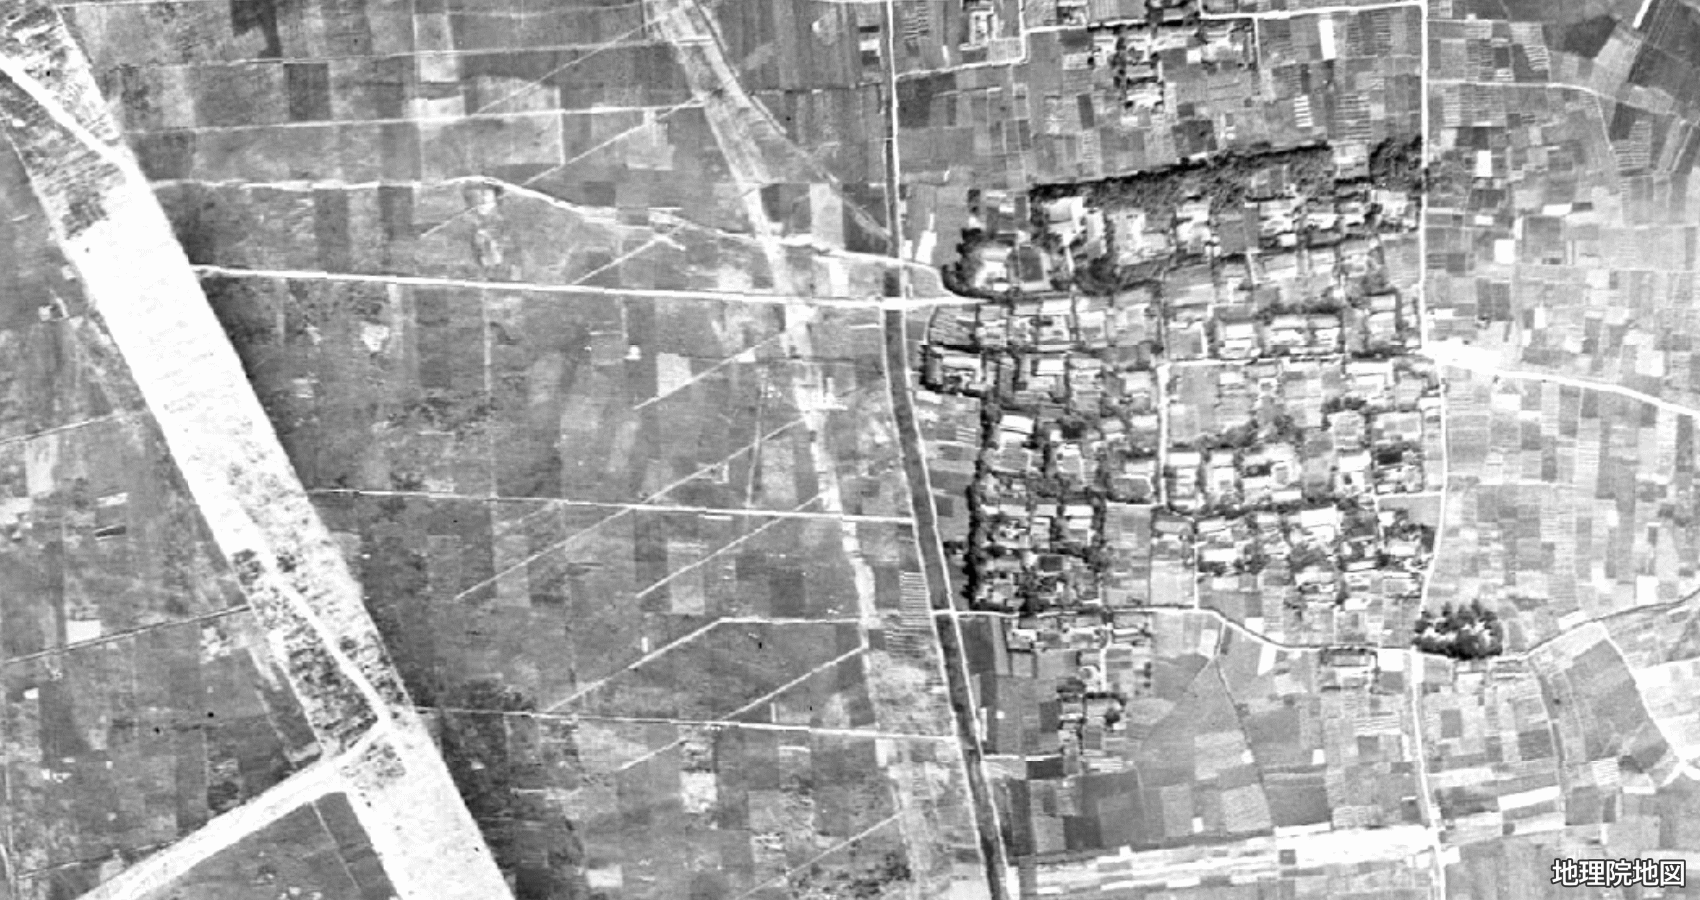 清須市上条 衛星地図 1945〜1950